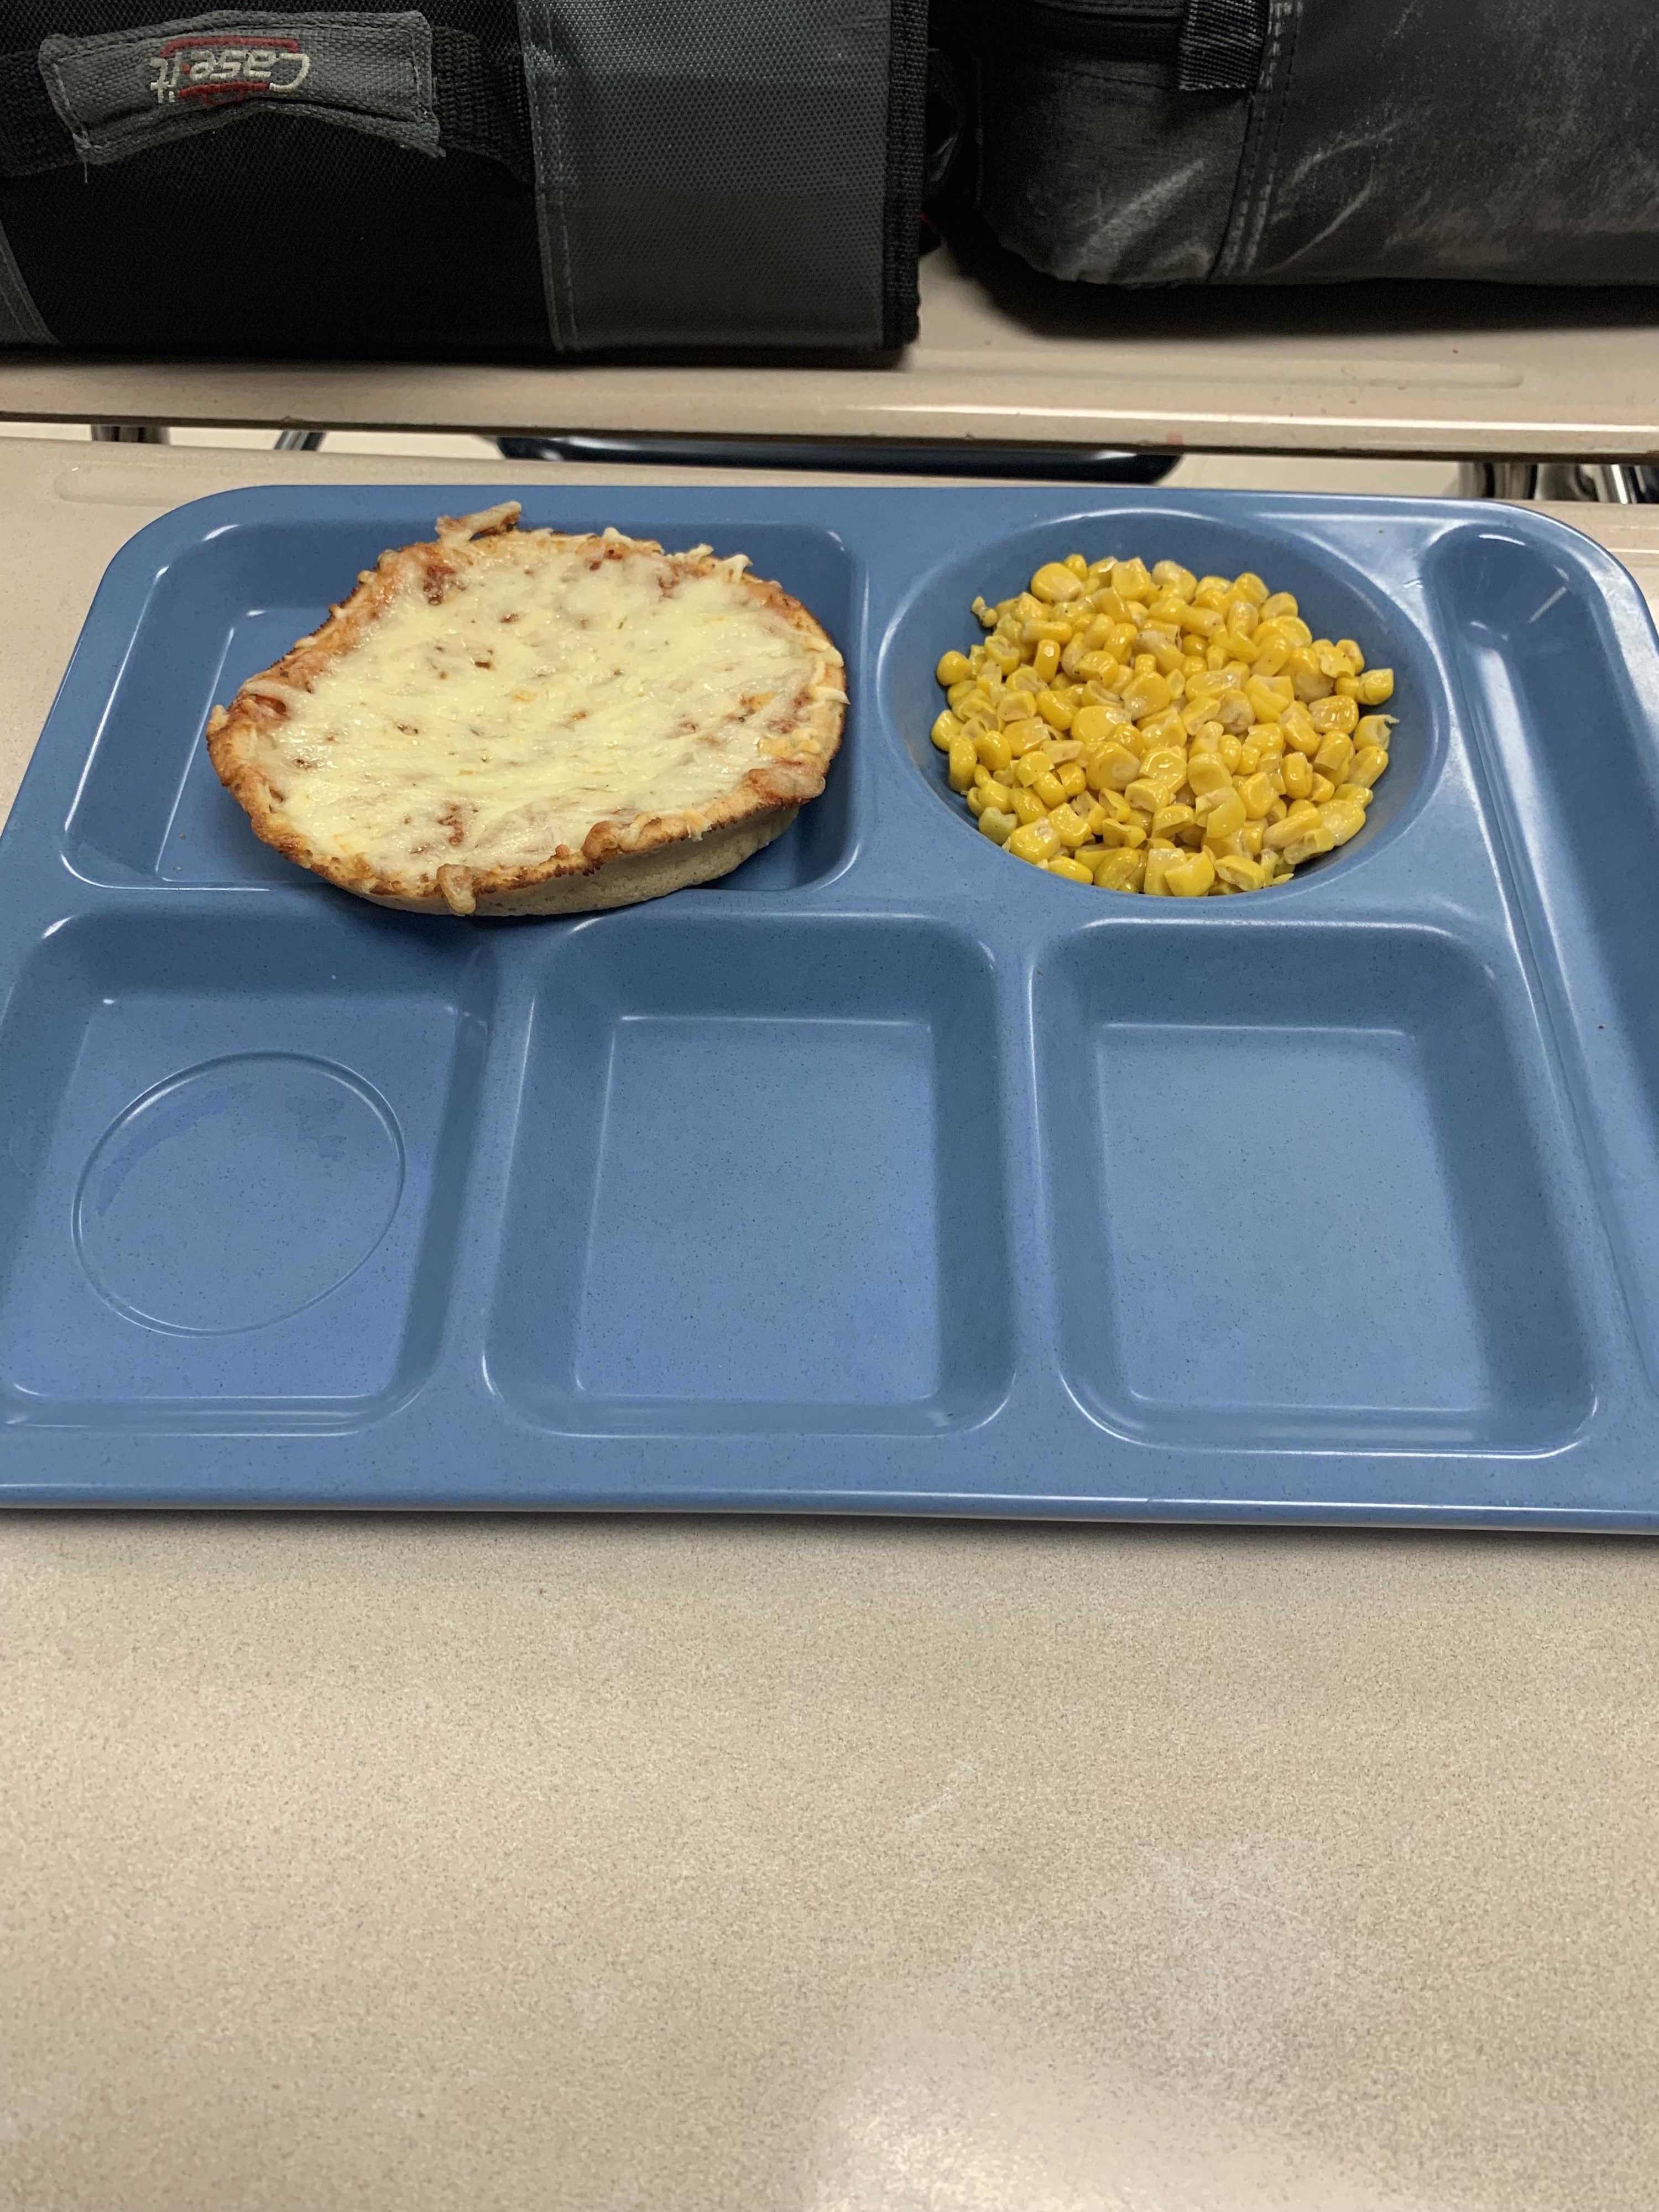 West Virginia school lunch